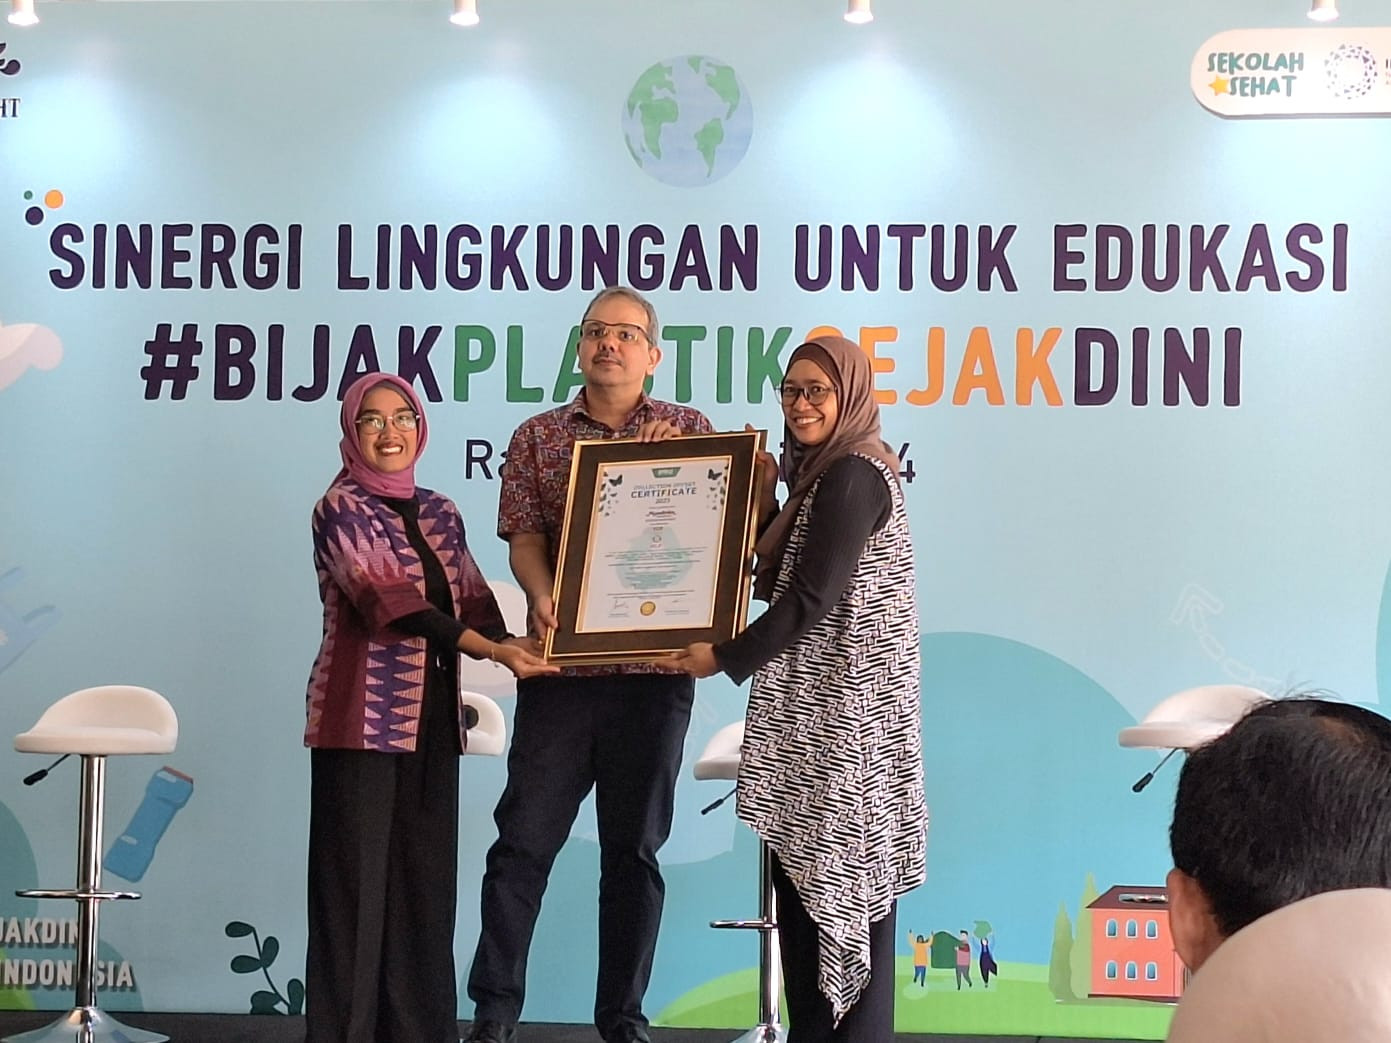 Gandeng Kemendikbudristek, Mondelez Indonesia Kembali Tingkatkan Edukasi #Bijakplastiksejakdini